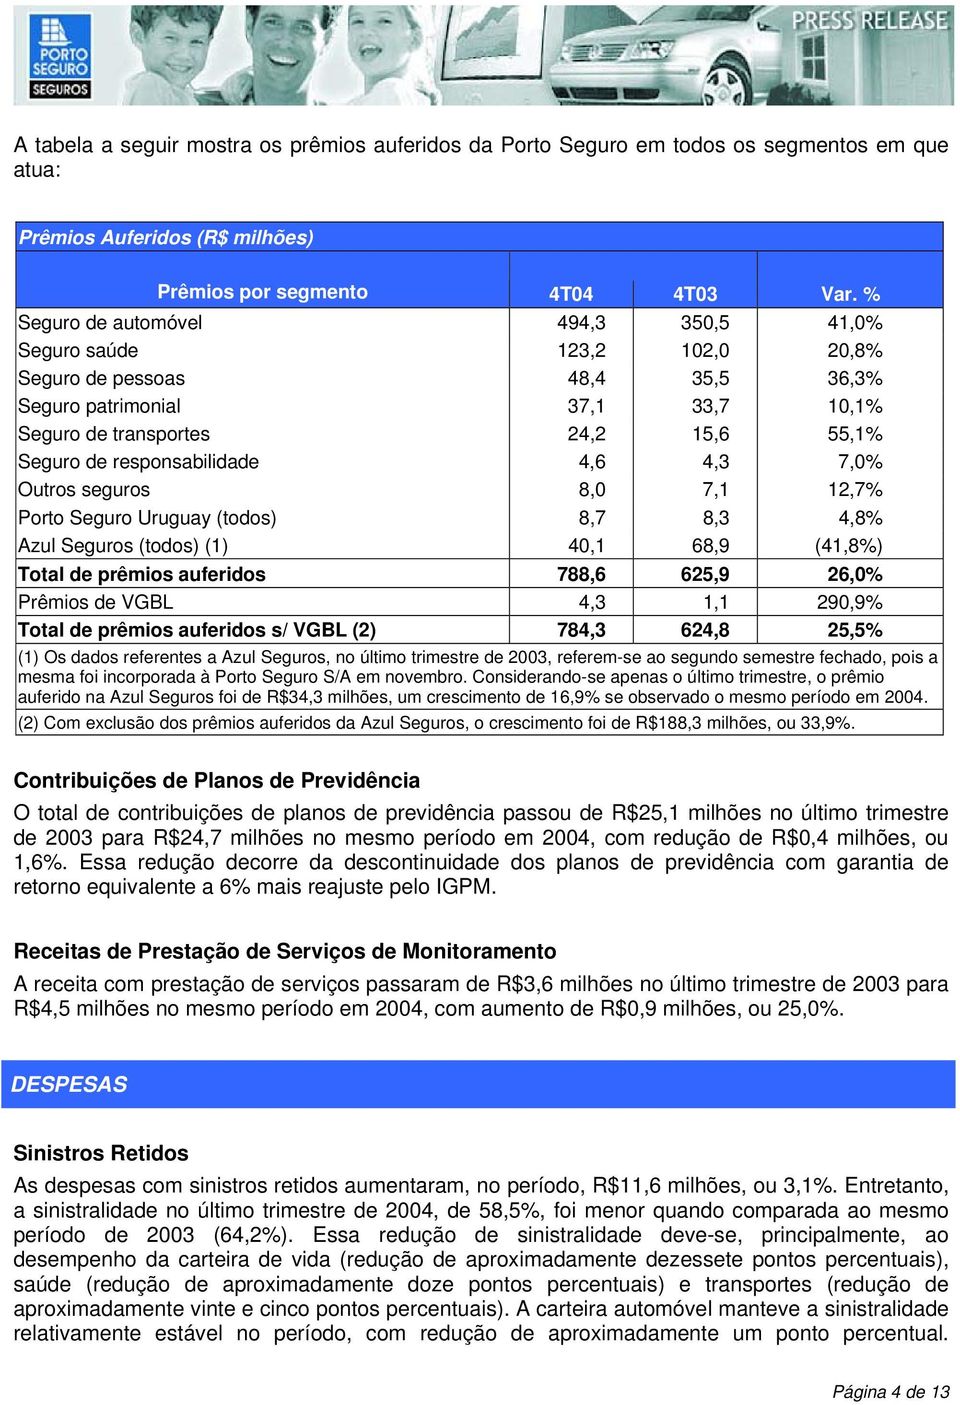 responsabilidade 4,6 4,3 7,0% Outros seguros 8,0 7,1 12,7% Porto Seguro Uruguay (todos) 8,7 8,3 4,8% Azul Seguros (todos) (1) 40,1 68,9 (41,8%) Total de prêmios auferidos 788,6 625,9 26,0% Prêmios de